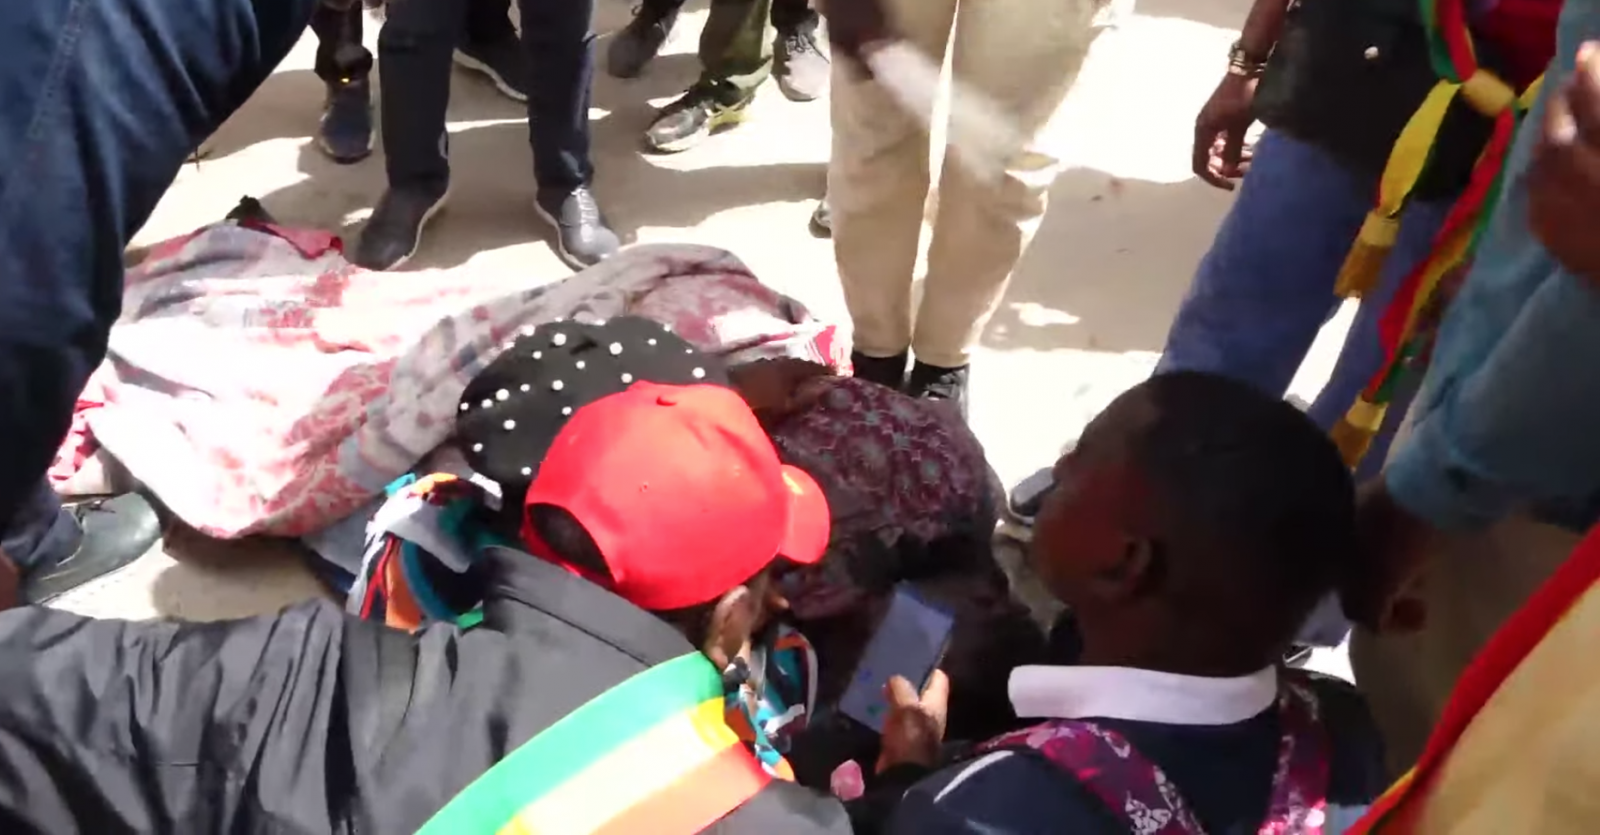 Manifestation de l’opposition : Heurts au siège du Prp, une journaliste blessée